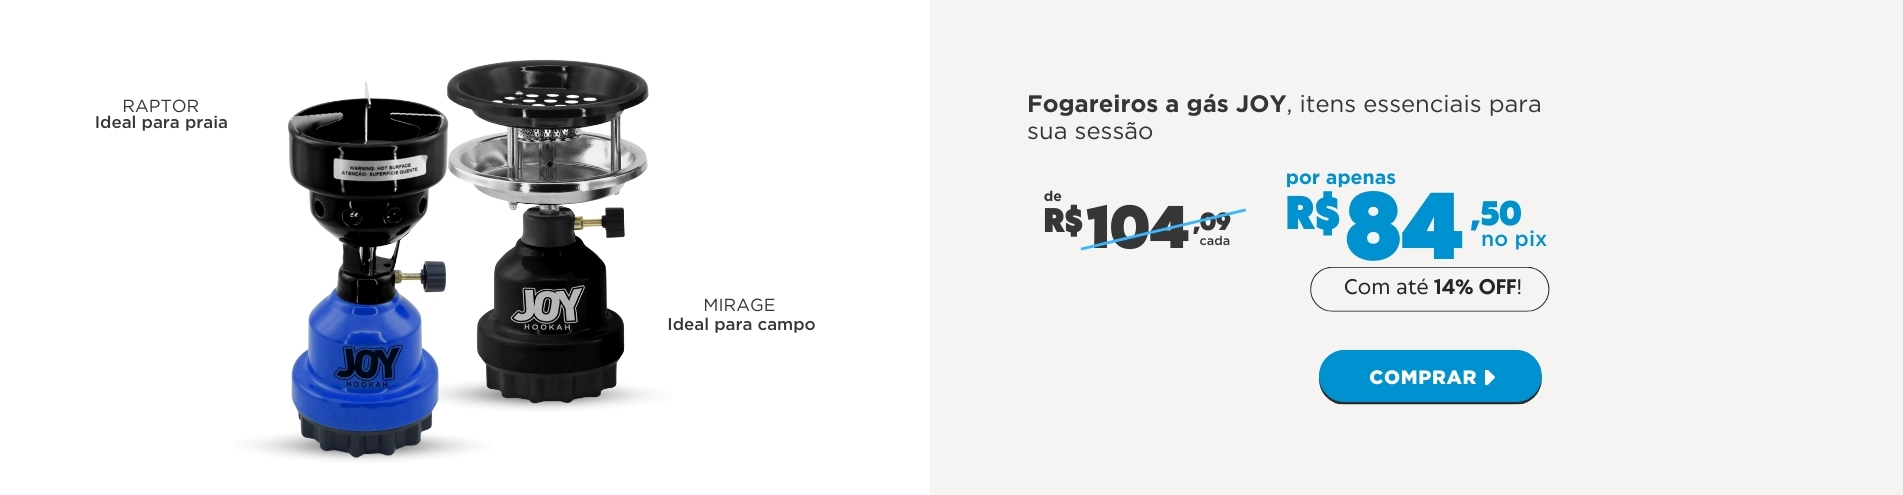 240426_FOGAREIROS_JOY